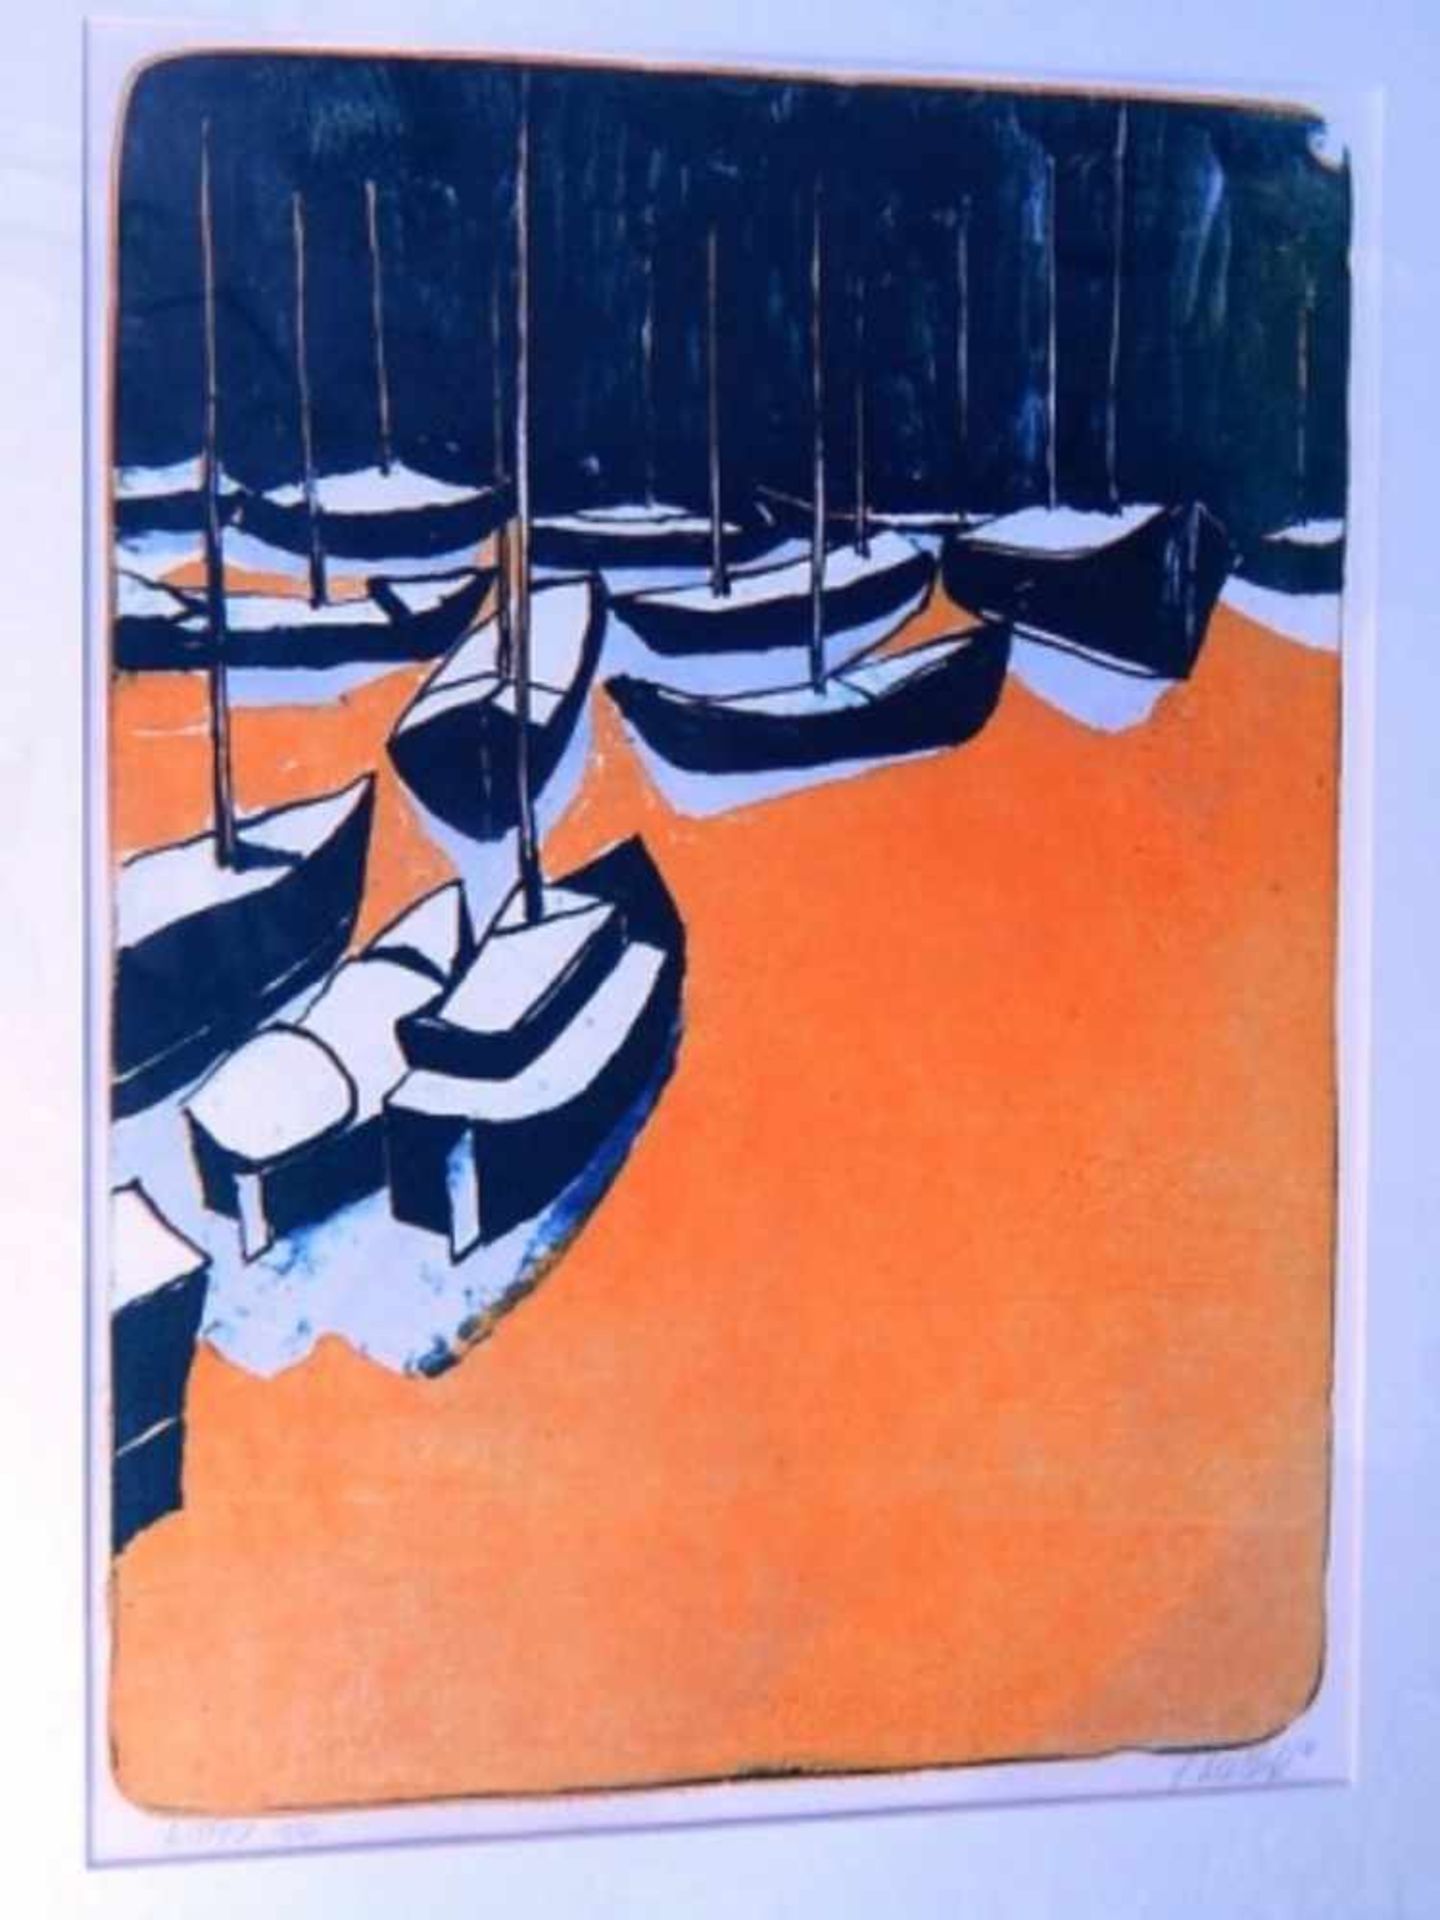 C.Rubbert(?-2015)"Hafen mit Segelbooten", Farlithographie, signiert, nummeriert 1/5, datiert 04